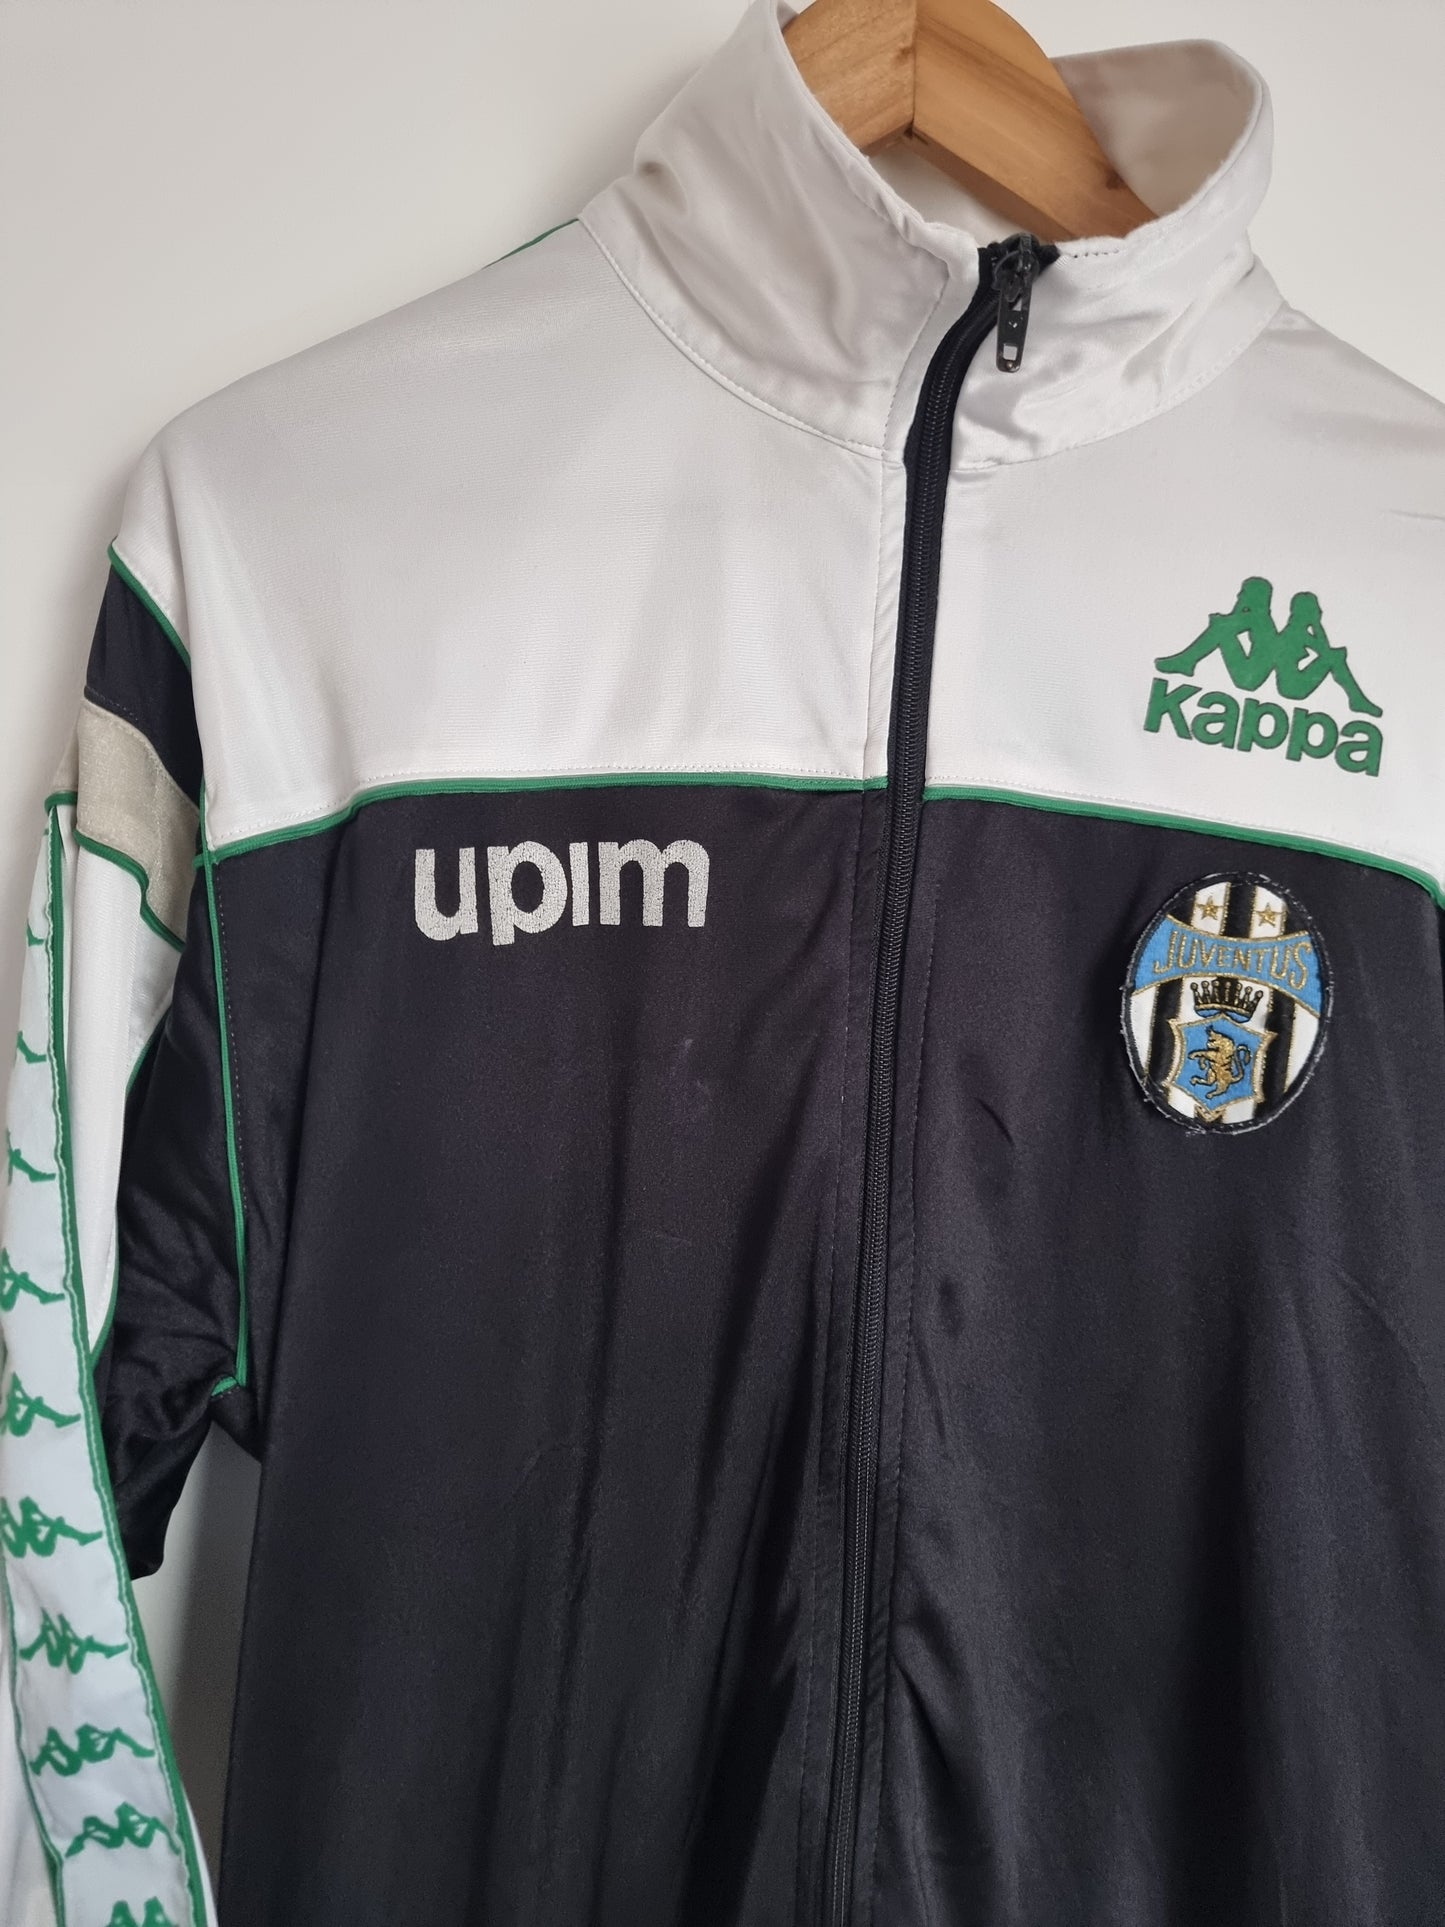 Kappa Juventus 90/91 Track Jacket Large